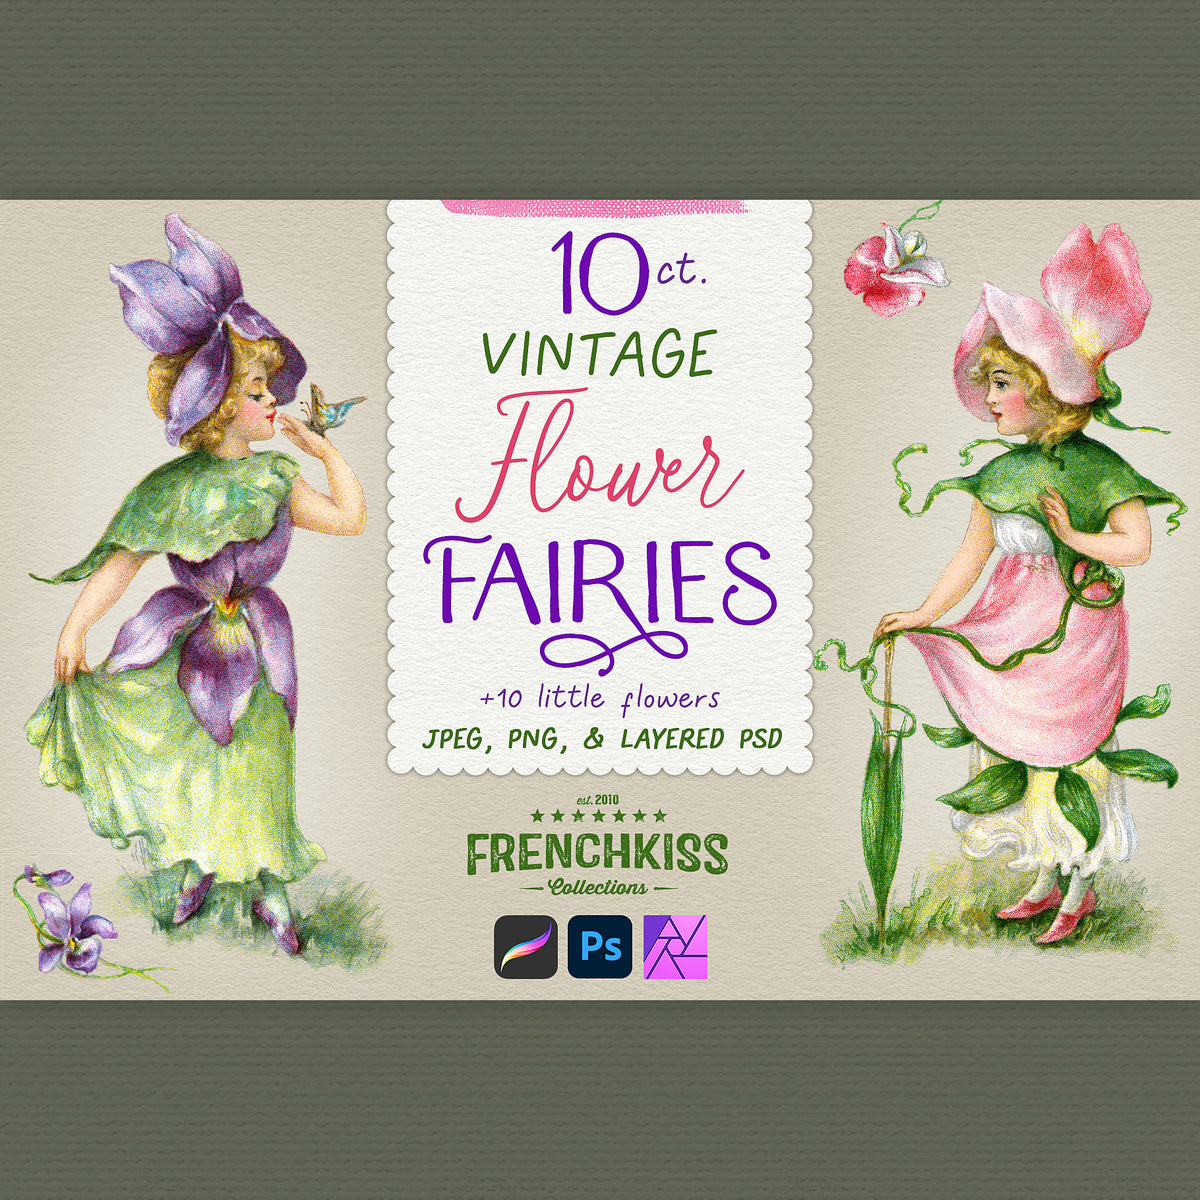 Vintage Flower Fairies digital vintage illustrations digital download. Extended license